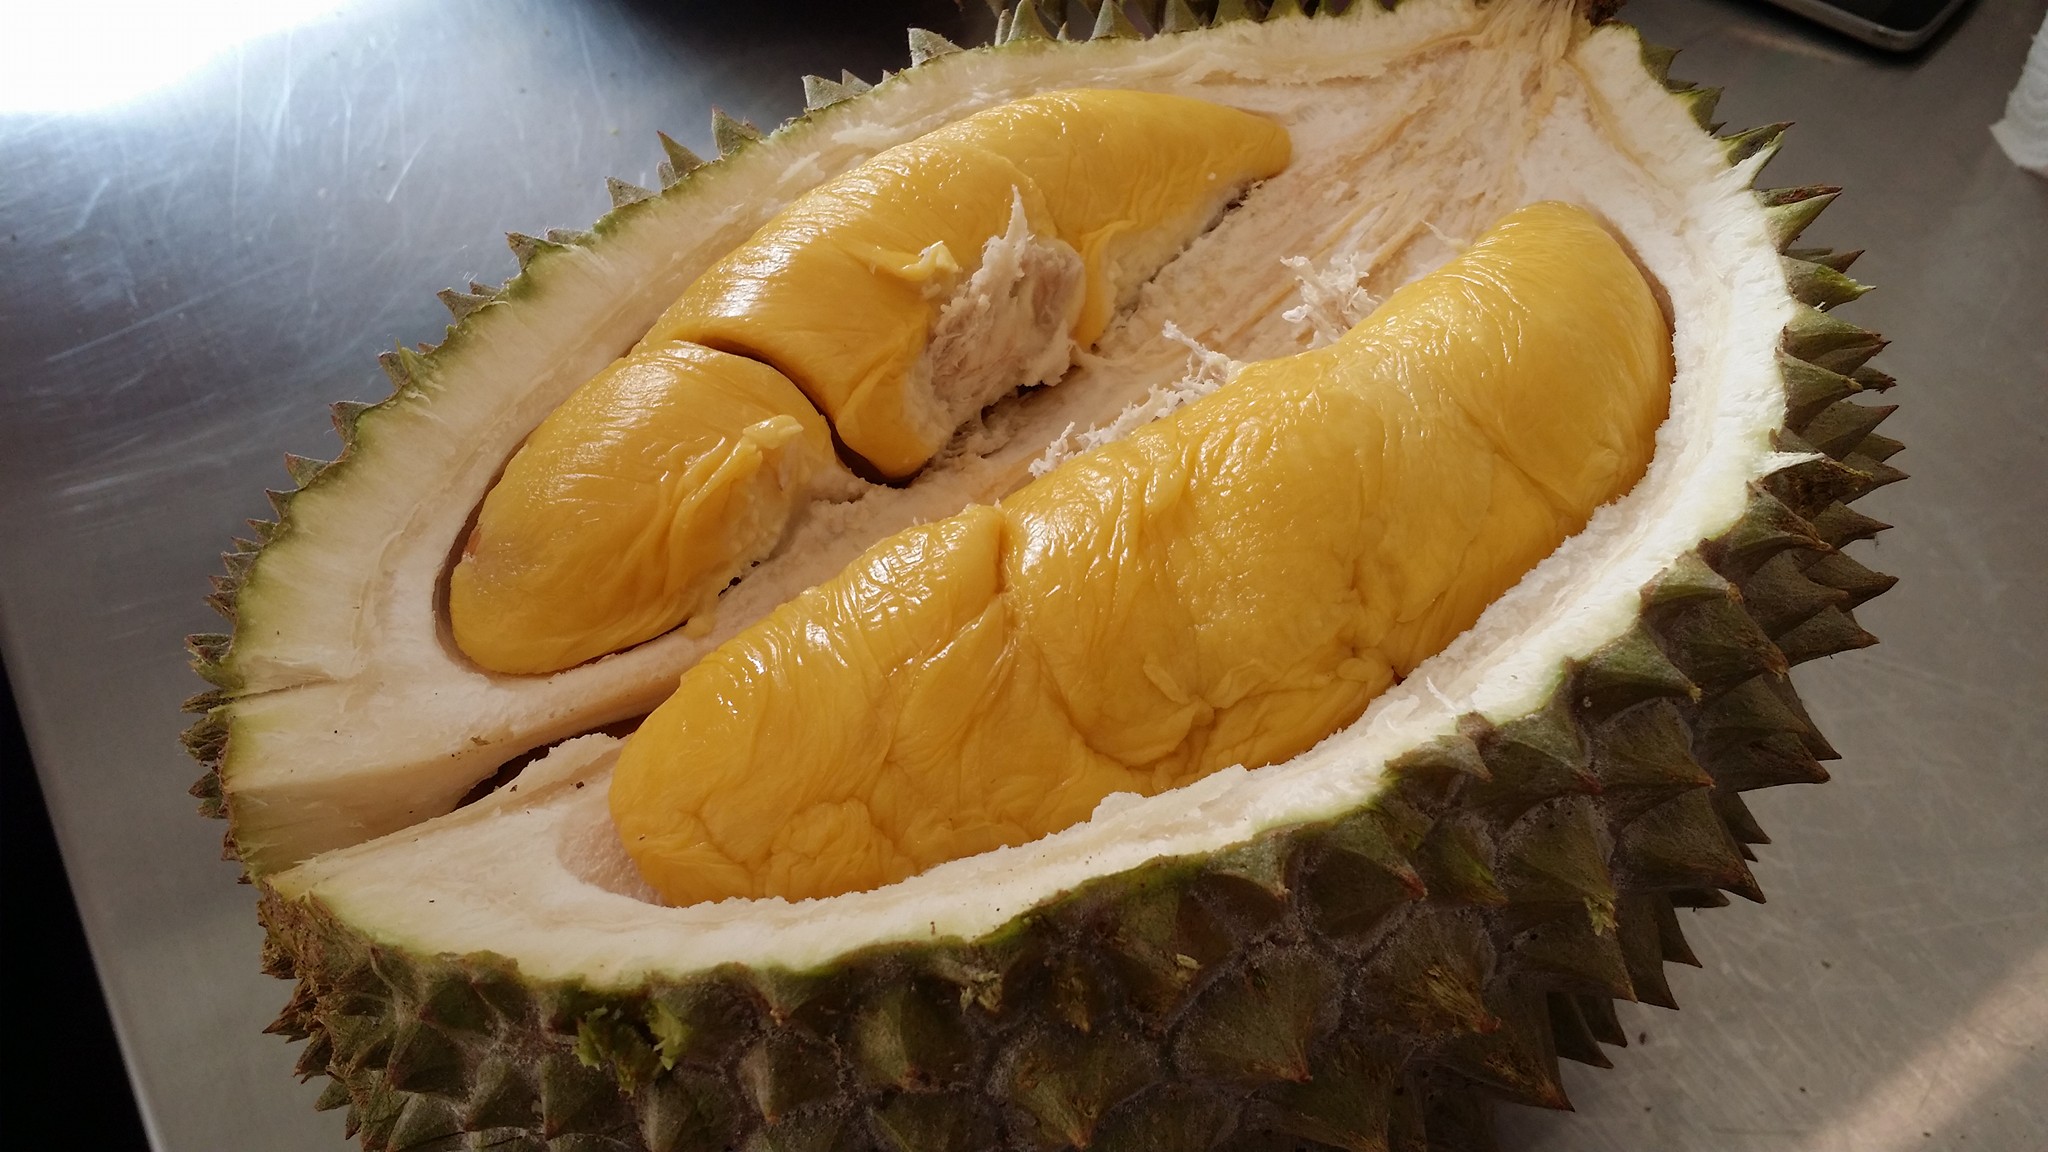 Musang King Durian - Śmierdzący Owoc , HD Wallpaper & Backgrounds